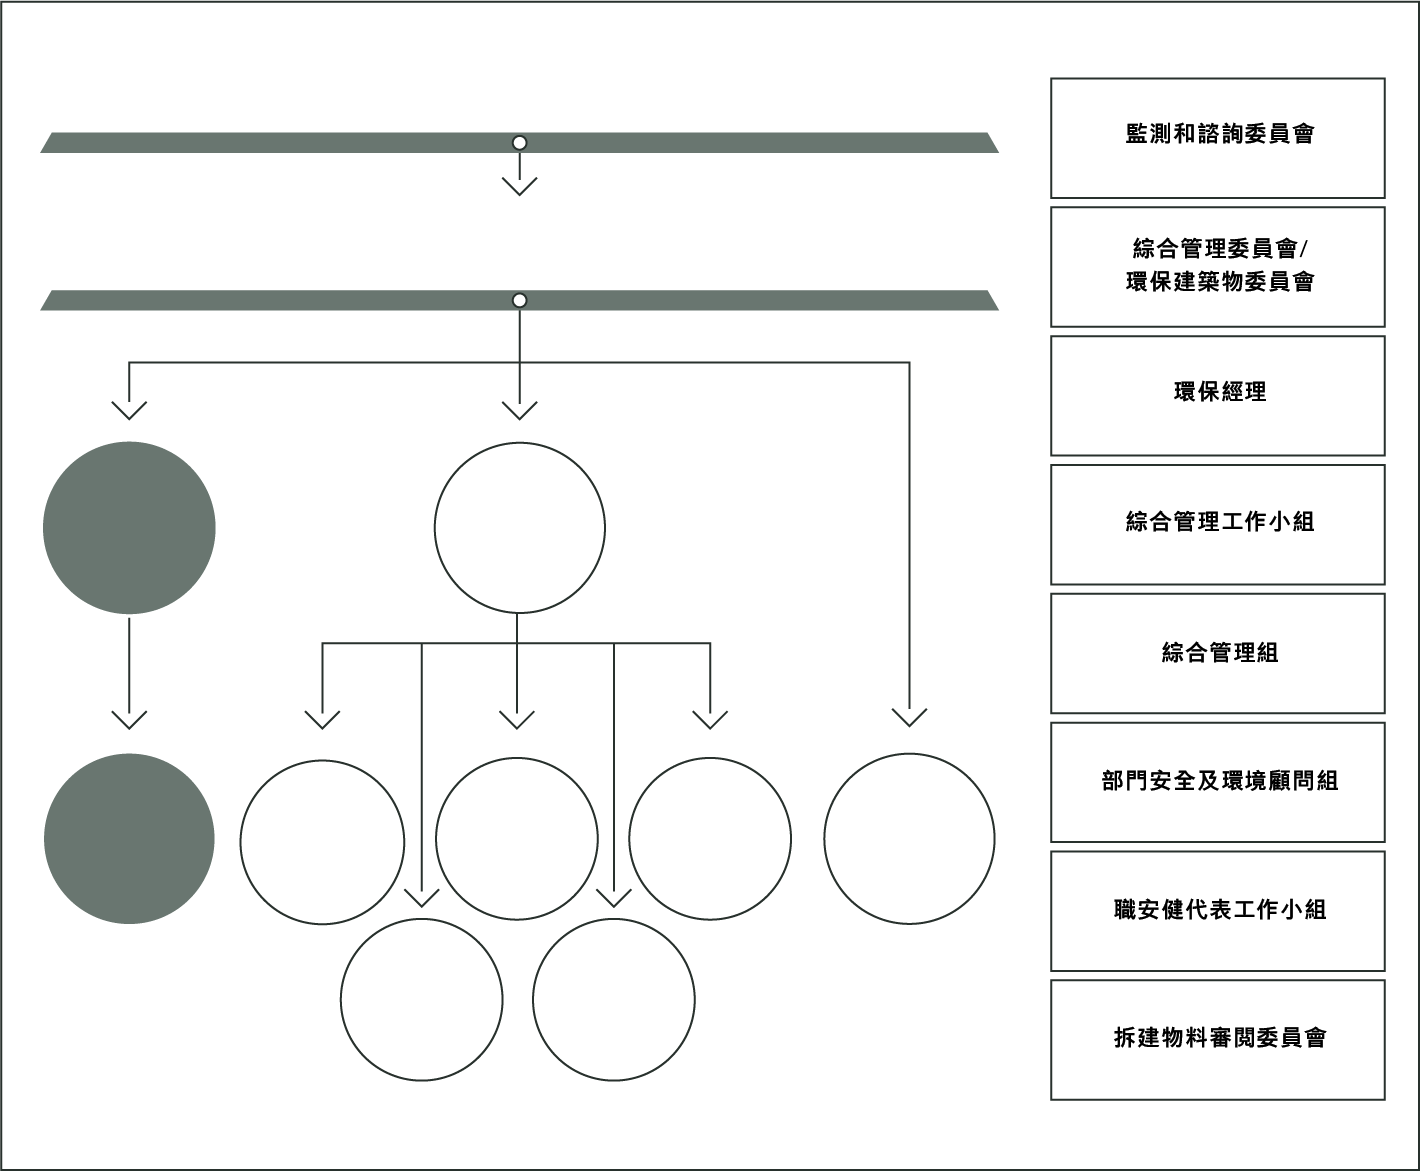 Organisation Structure - ArchSD